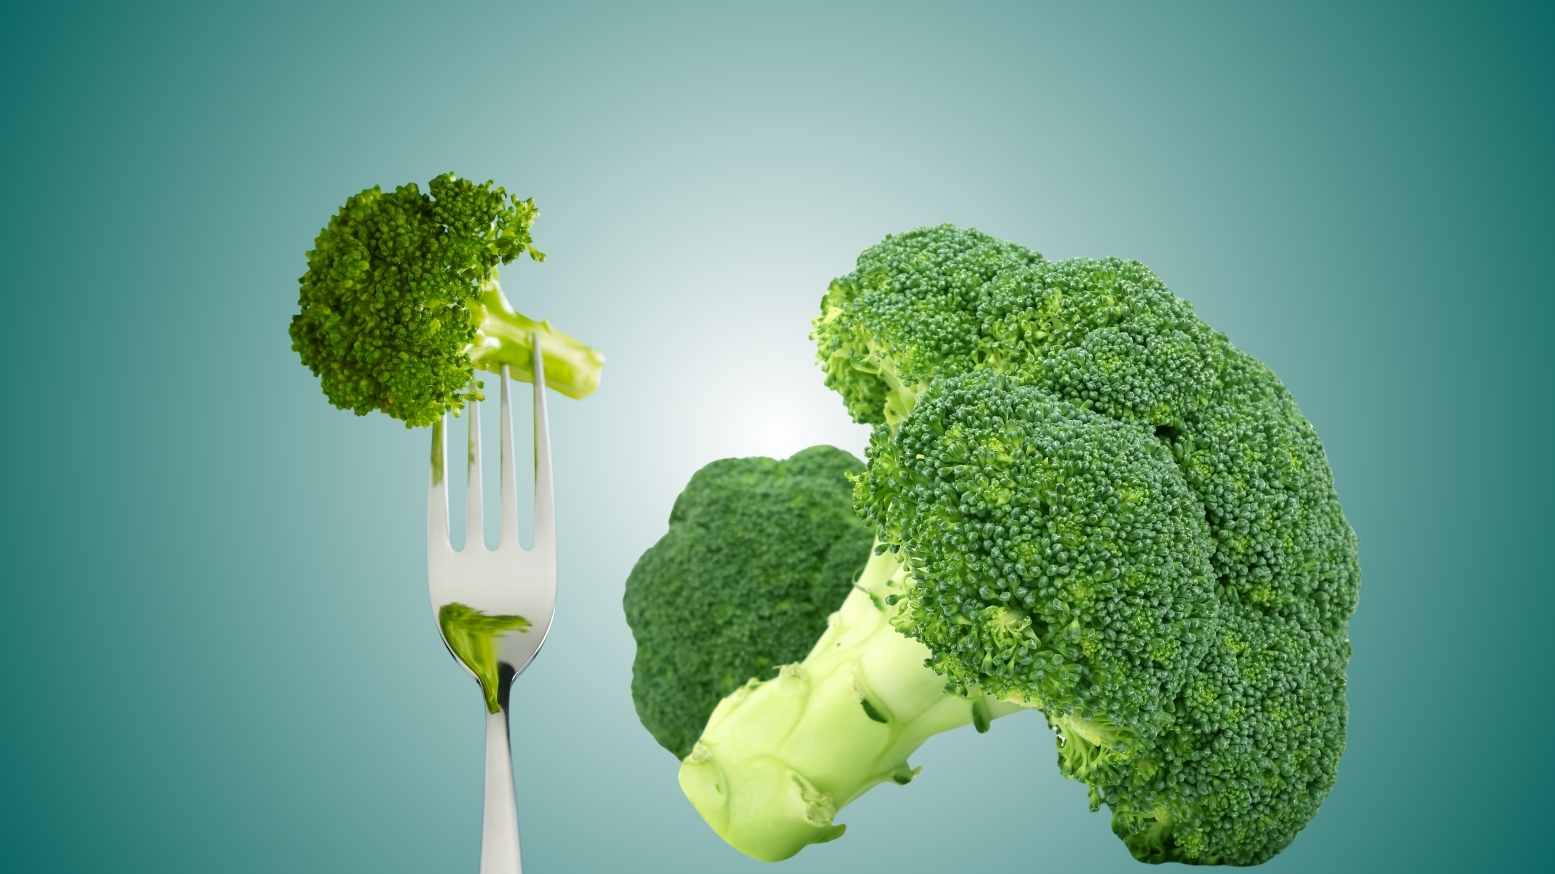 An image of Broccoli